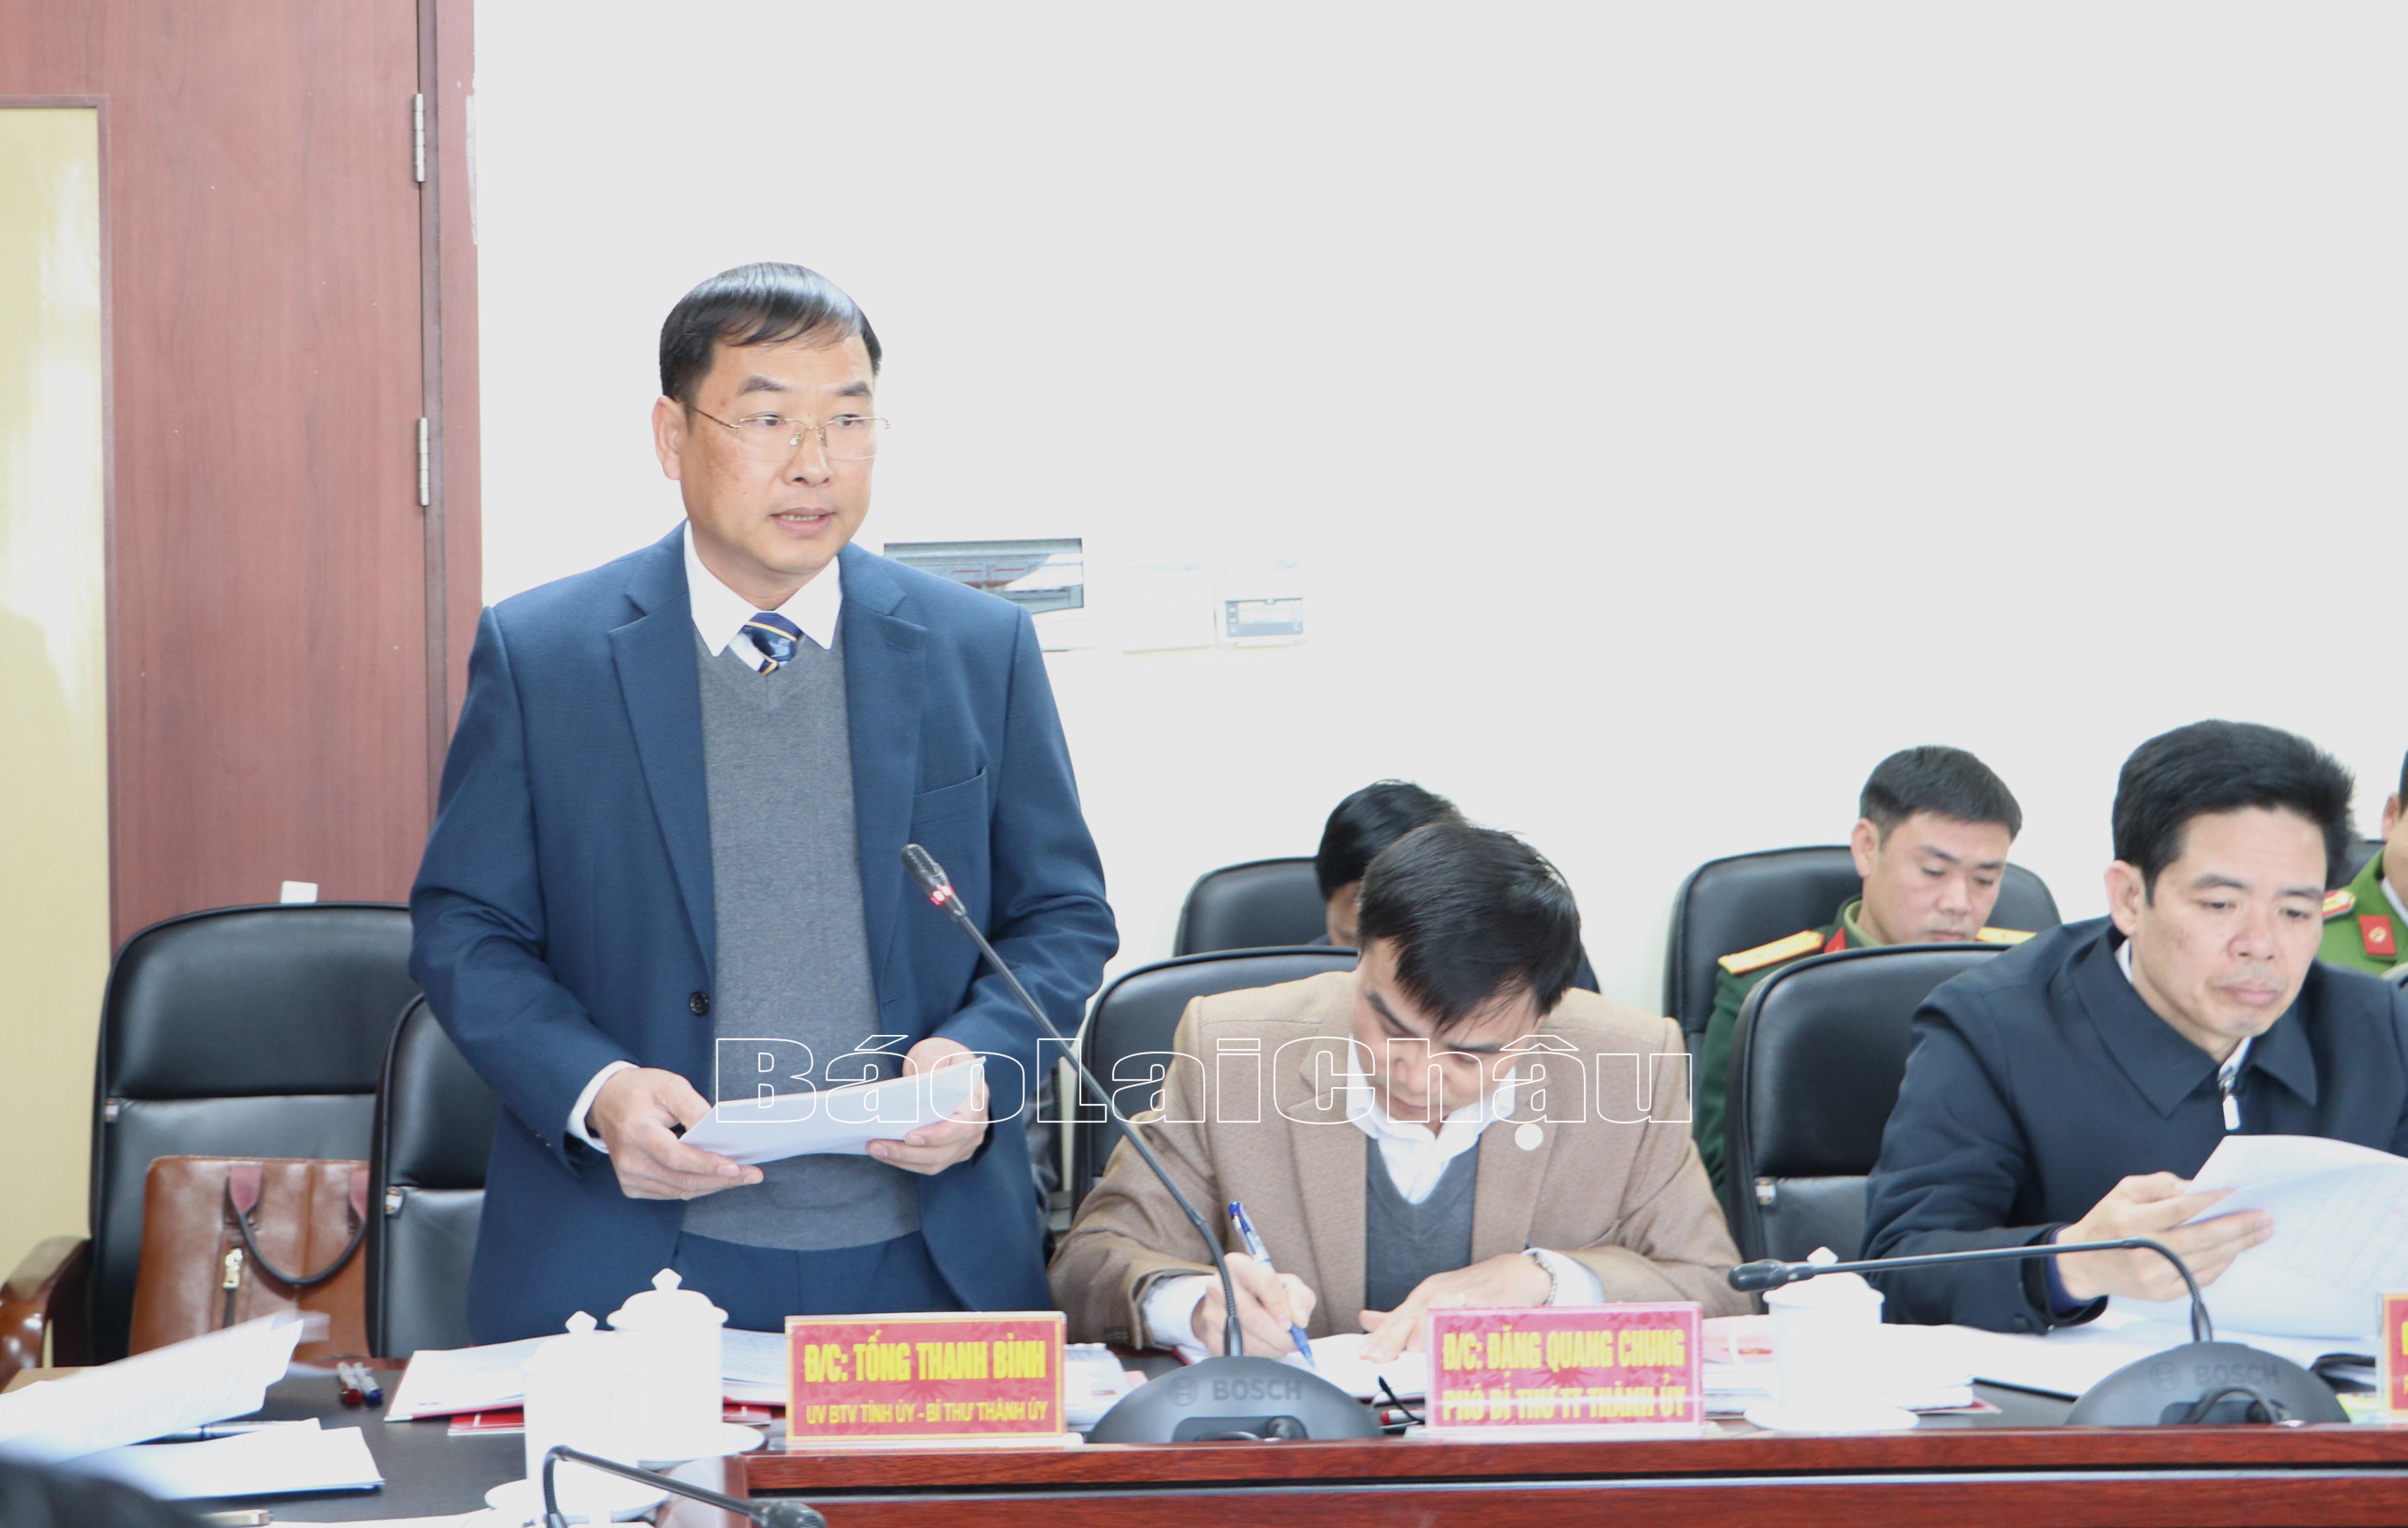 Đồng chí Tống Thanh Bình - Ủy viên Ban Thường vụ Tỉnh ủy, Bí thư Thành ủy Lai Châu báo cáo với đoàn công tác về tình hình thực hiện Nghị quyết Đại hội Đảng bộ thành phố lần thứ IV, nhiệm kỳ 2020-2025.